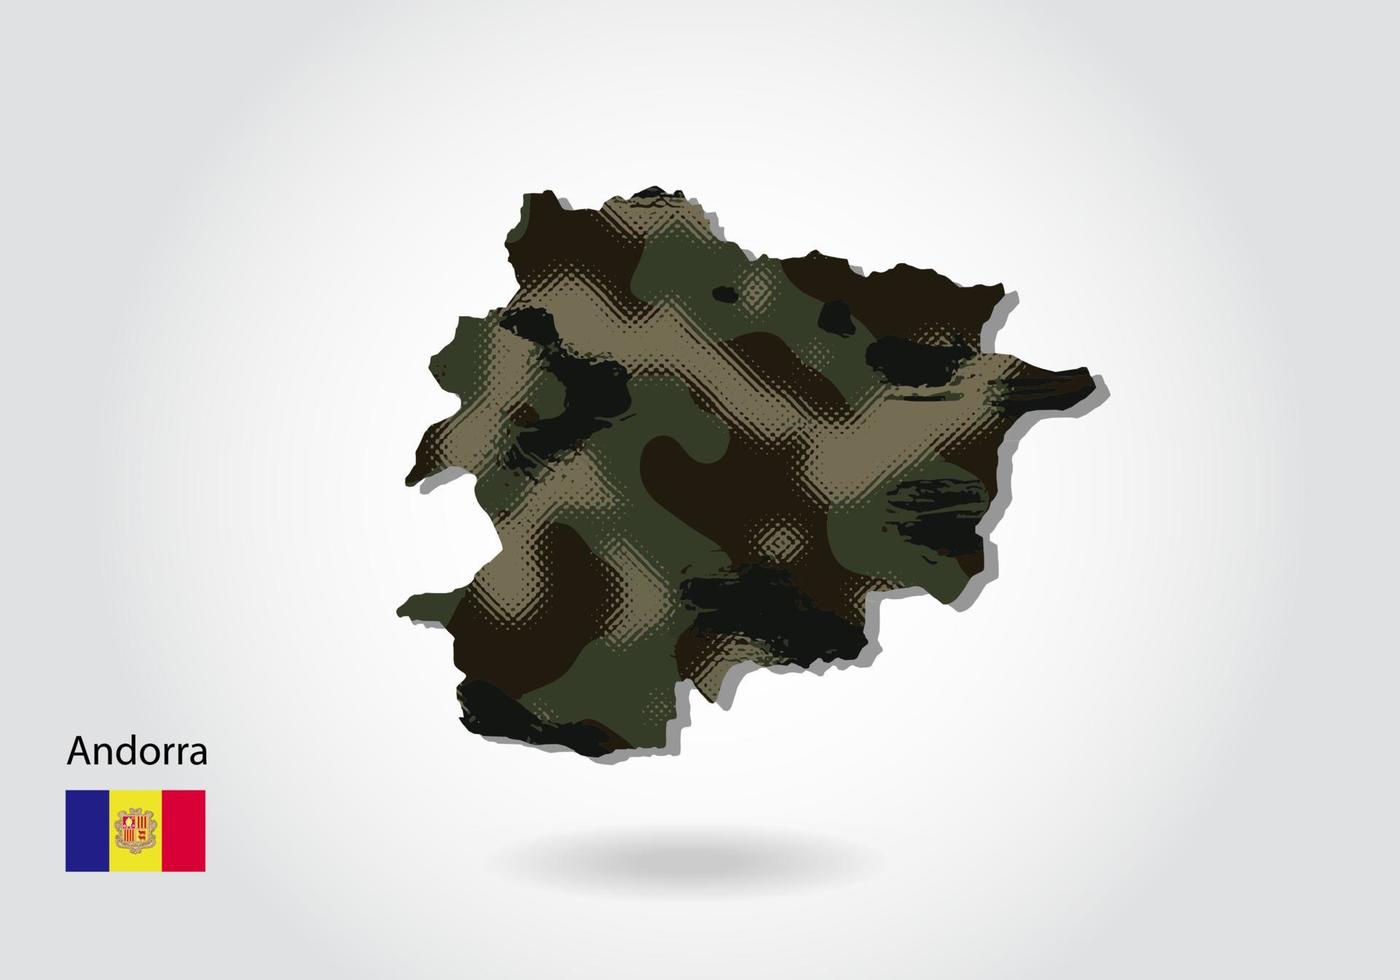 mapa de andorra con patrón de camuflaje, textura verde bosque en el mapa. concepto militar para ejército, soldado y guerra. escudo de armas, bandera. vector